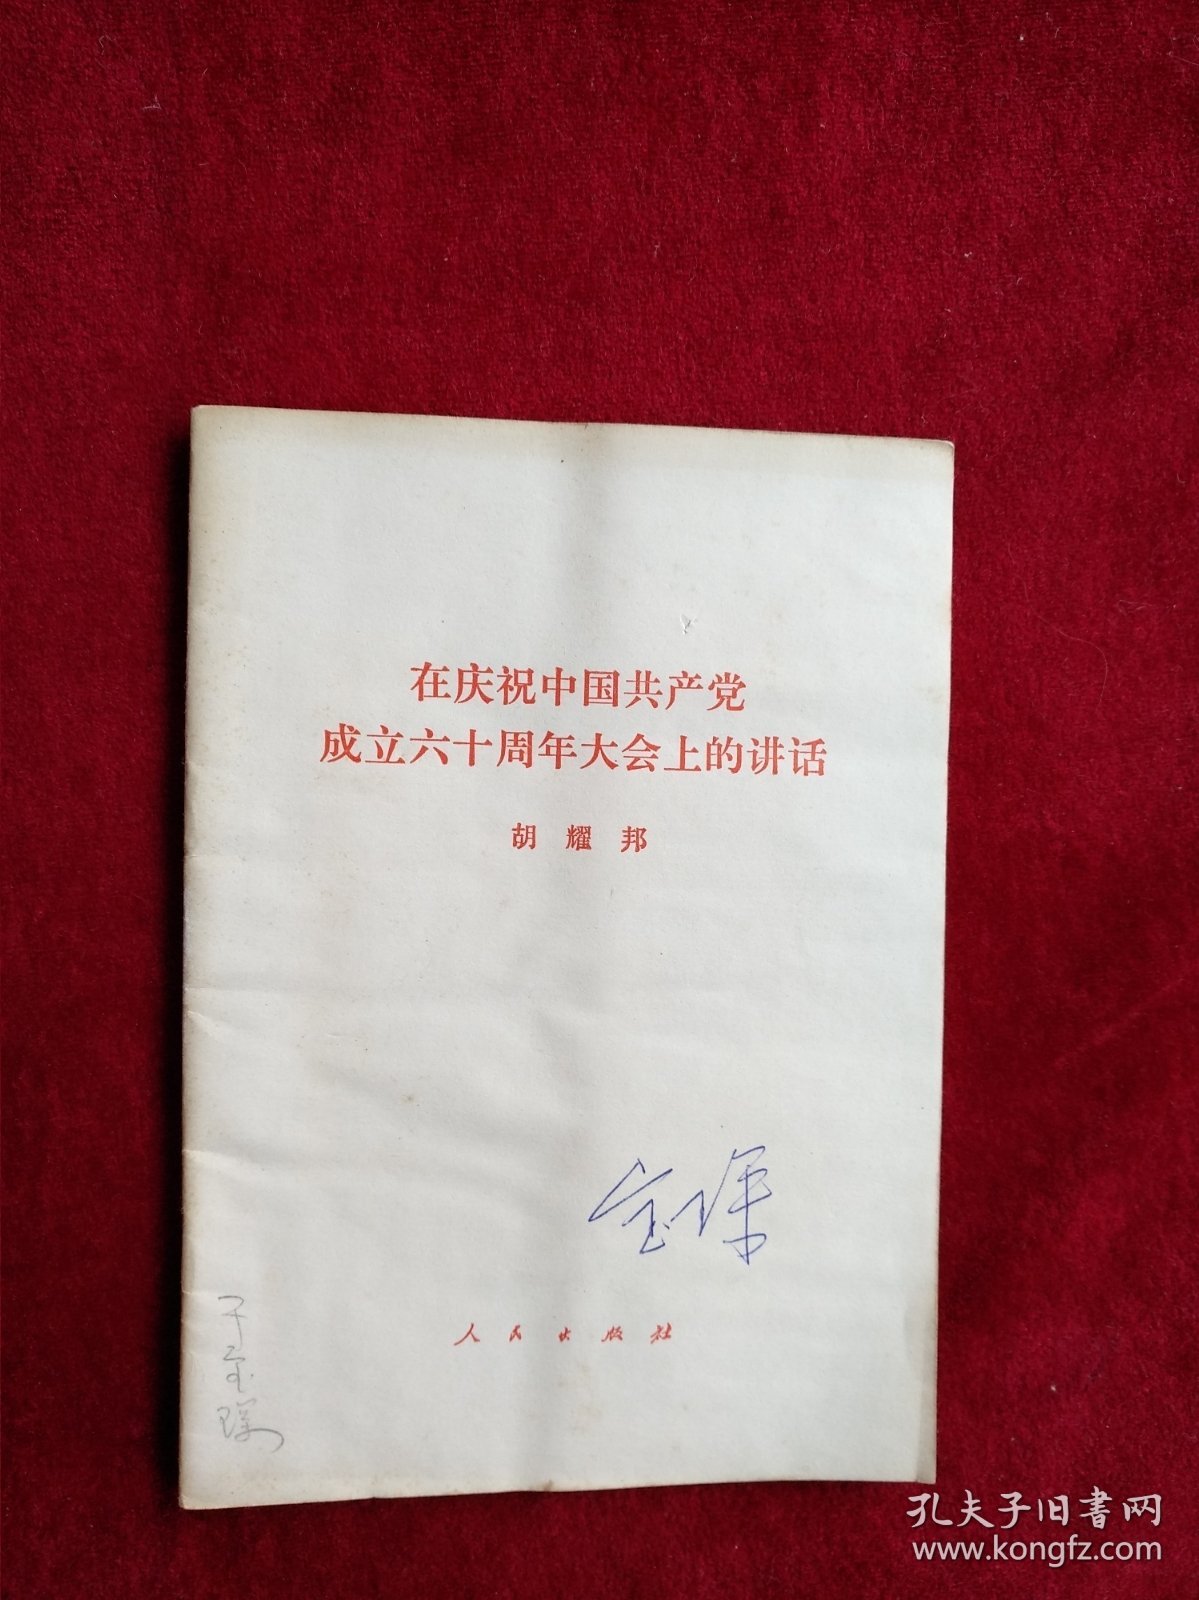 【架6】 在庆祝中国共产党成立六十周年大会上的讲话胡耀邦 看好图片下单 书品如图